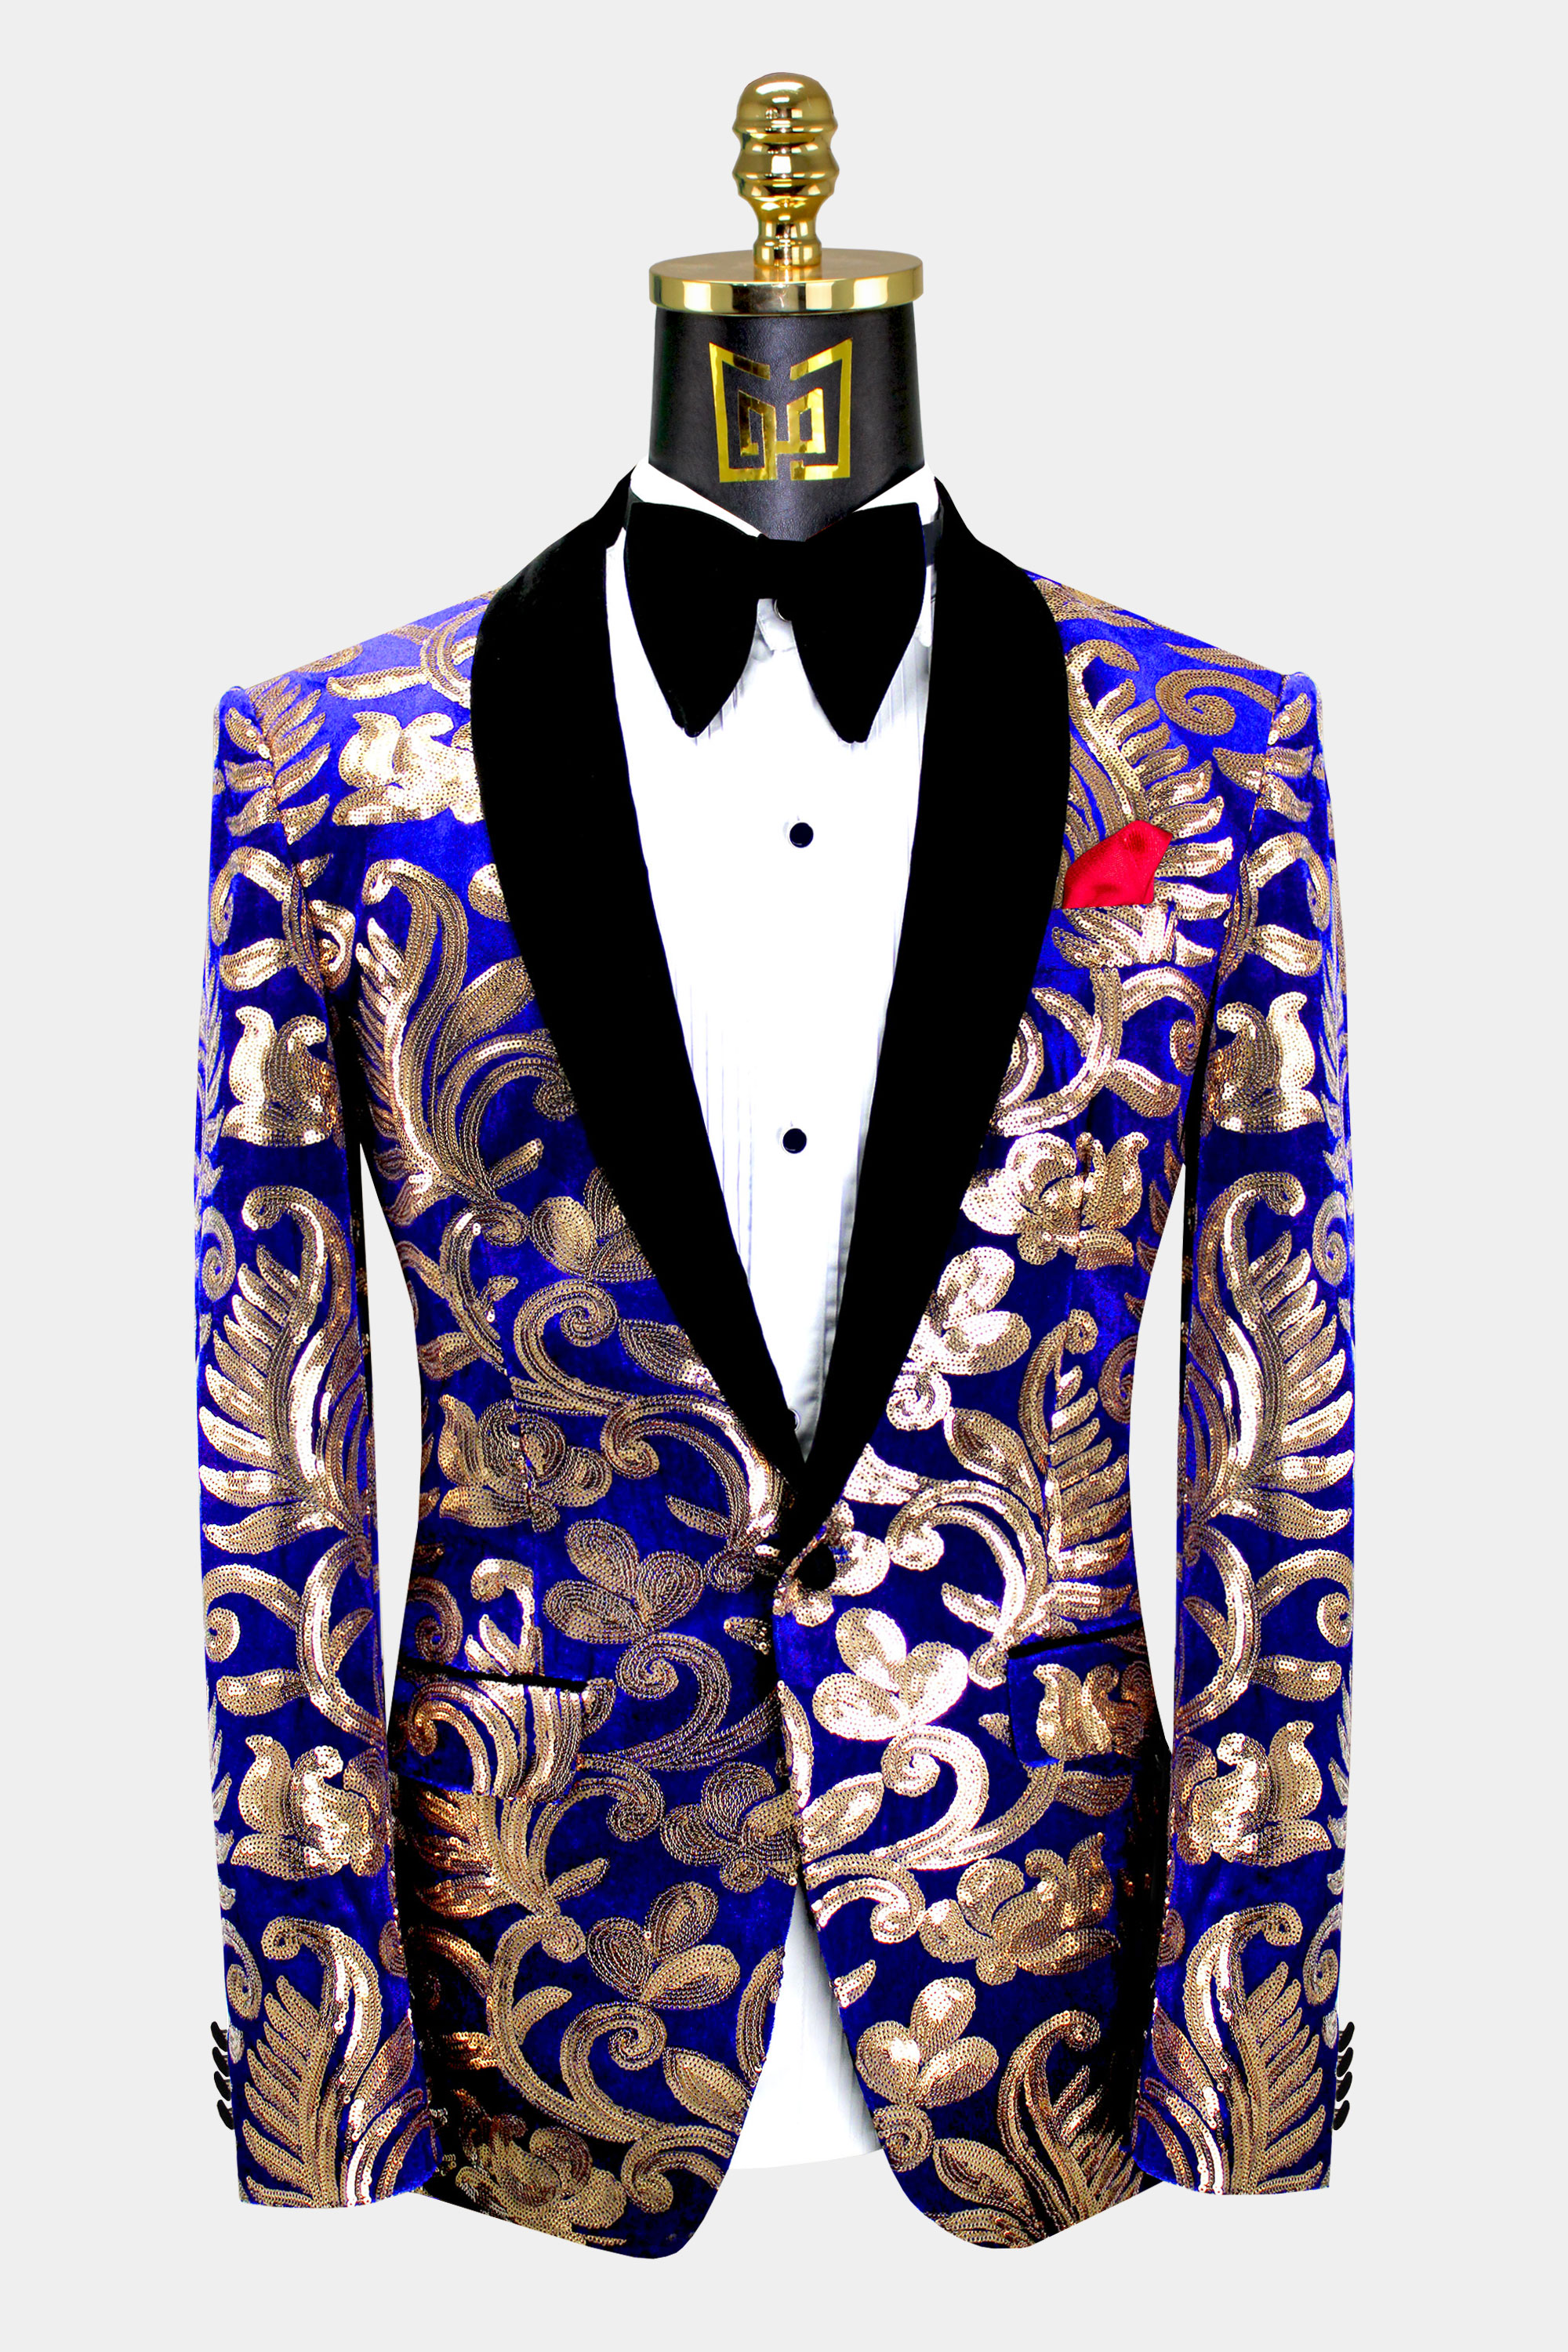 Blue and Gold Tuxedo Jacket | Gentleman's Guru